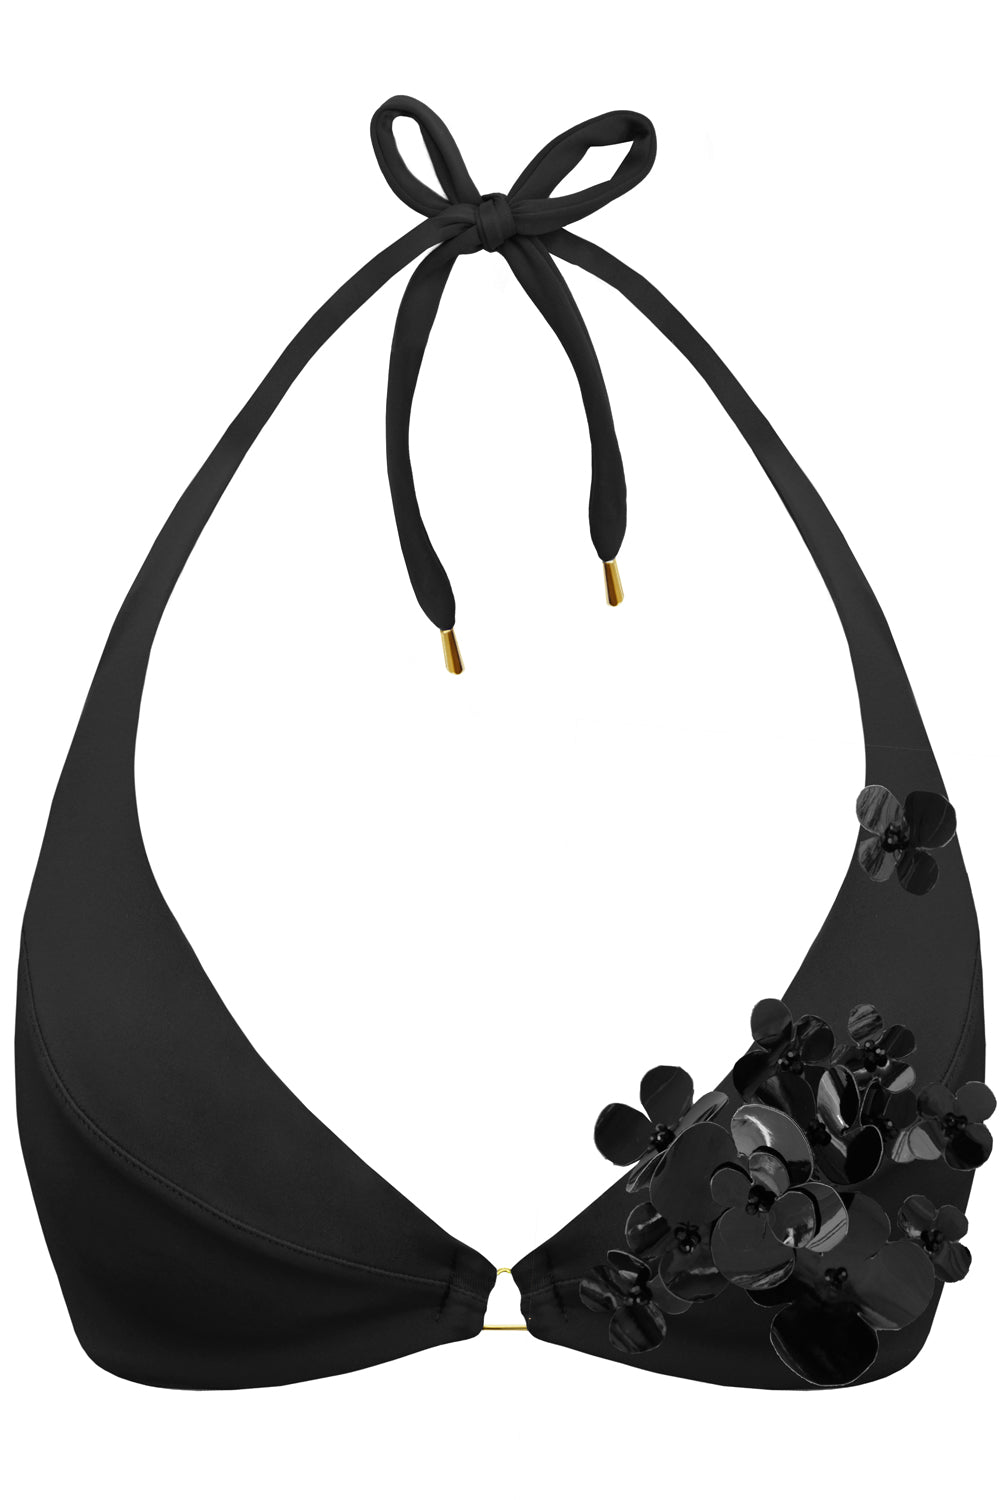 Radiya Floral Black bikini top